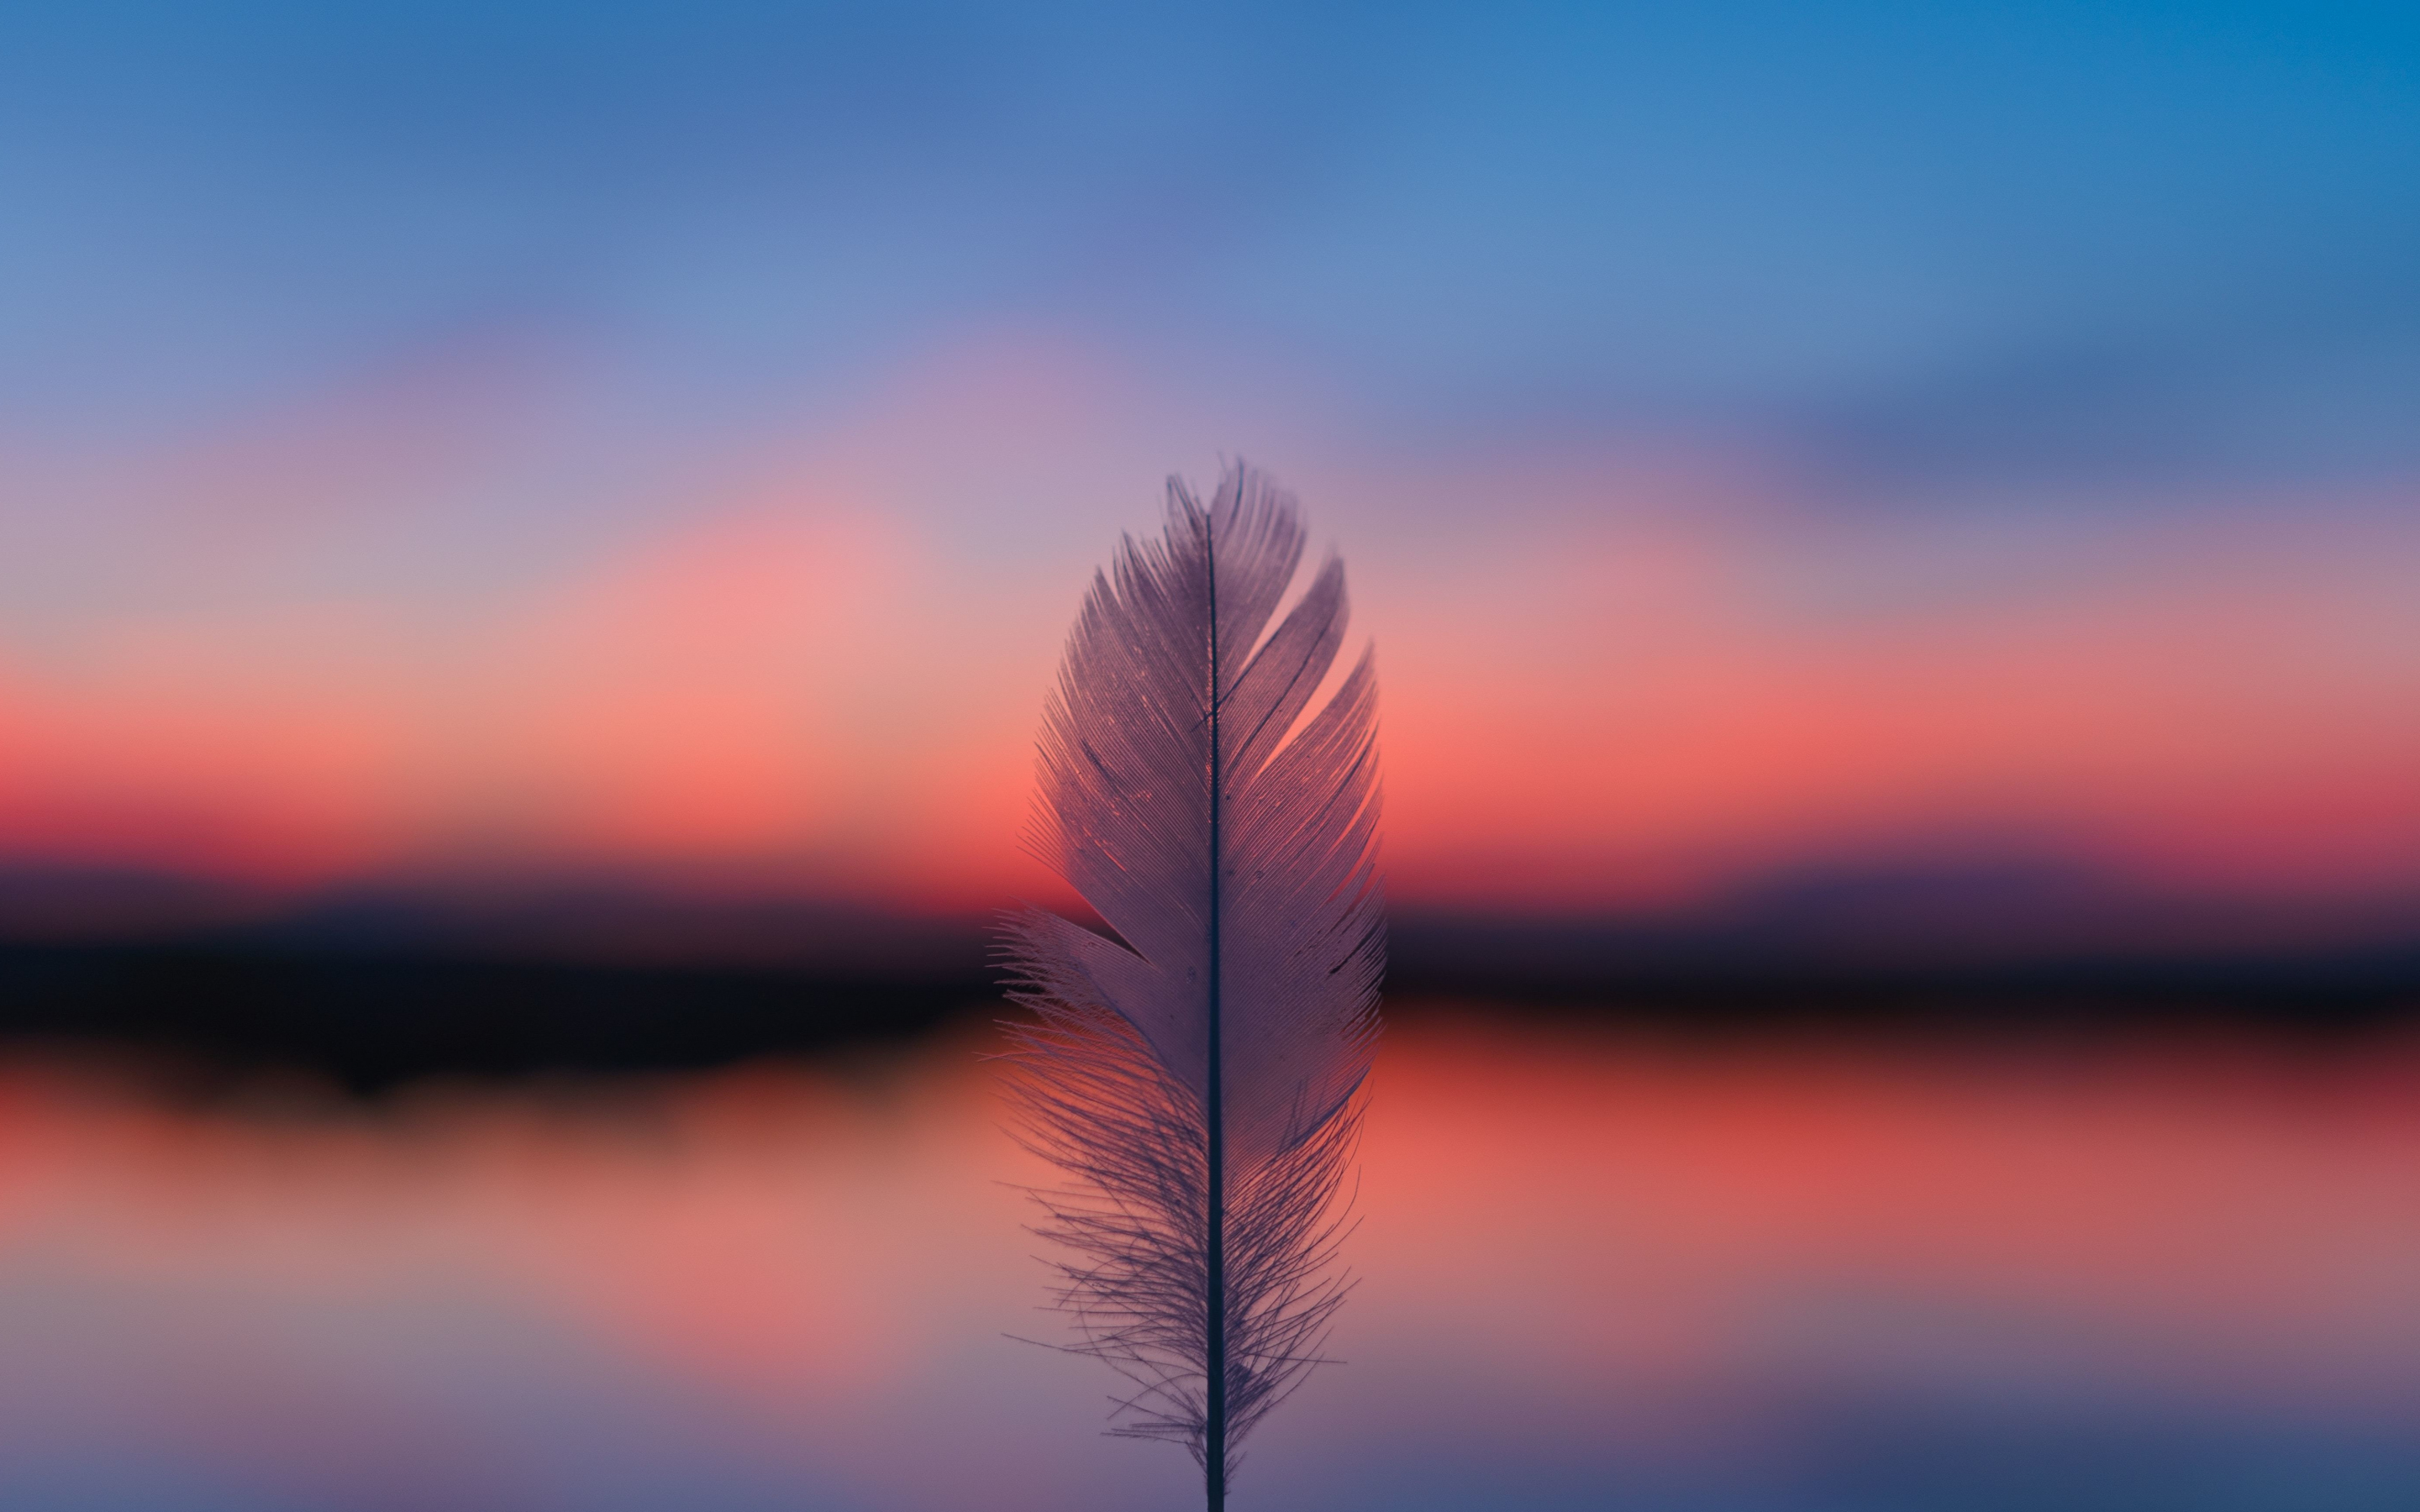 Feather, focus, blur, sunset, 2880x1800 wallpaper